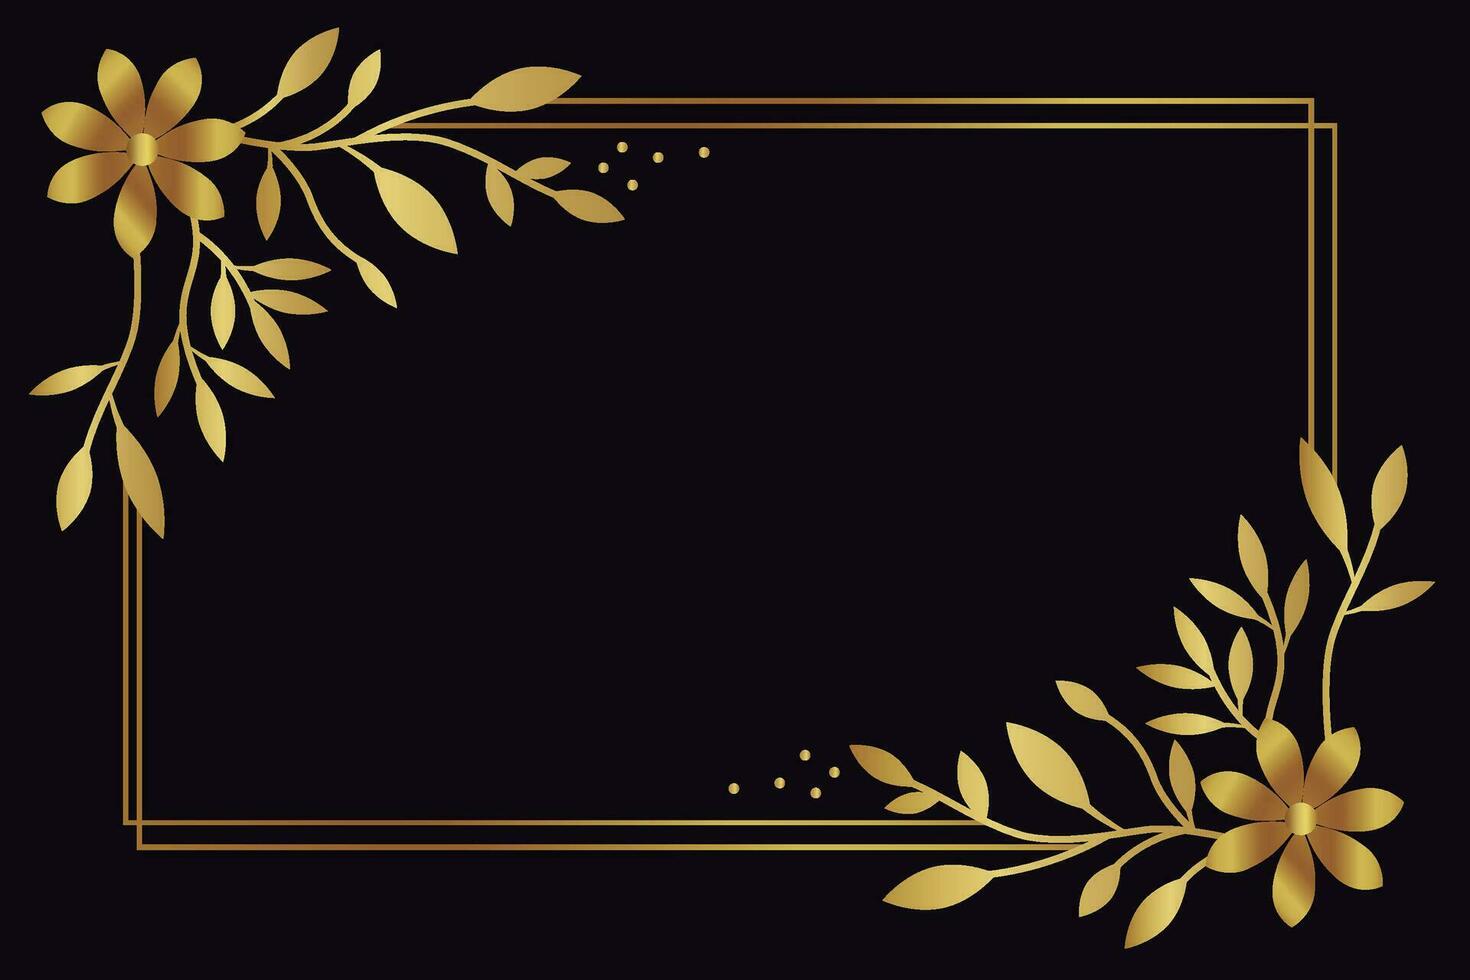 golden floral geometric border frame design vector